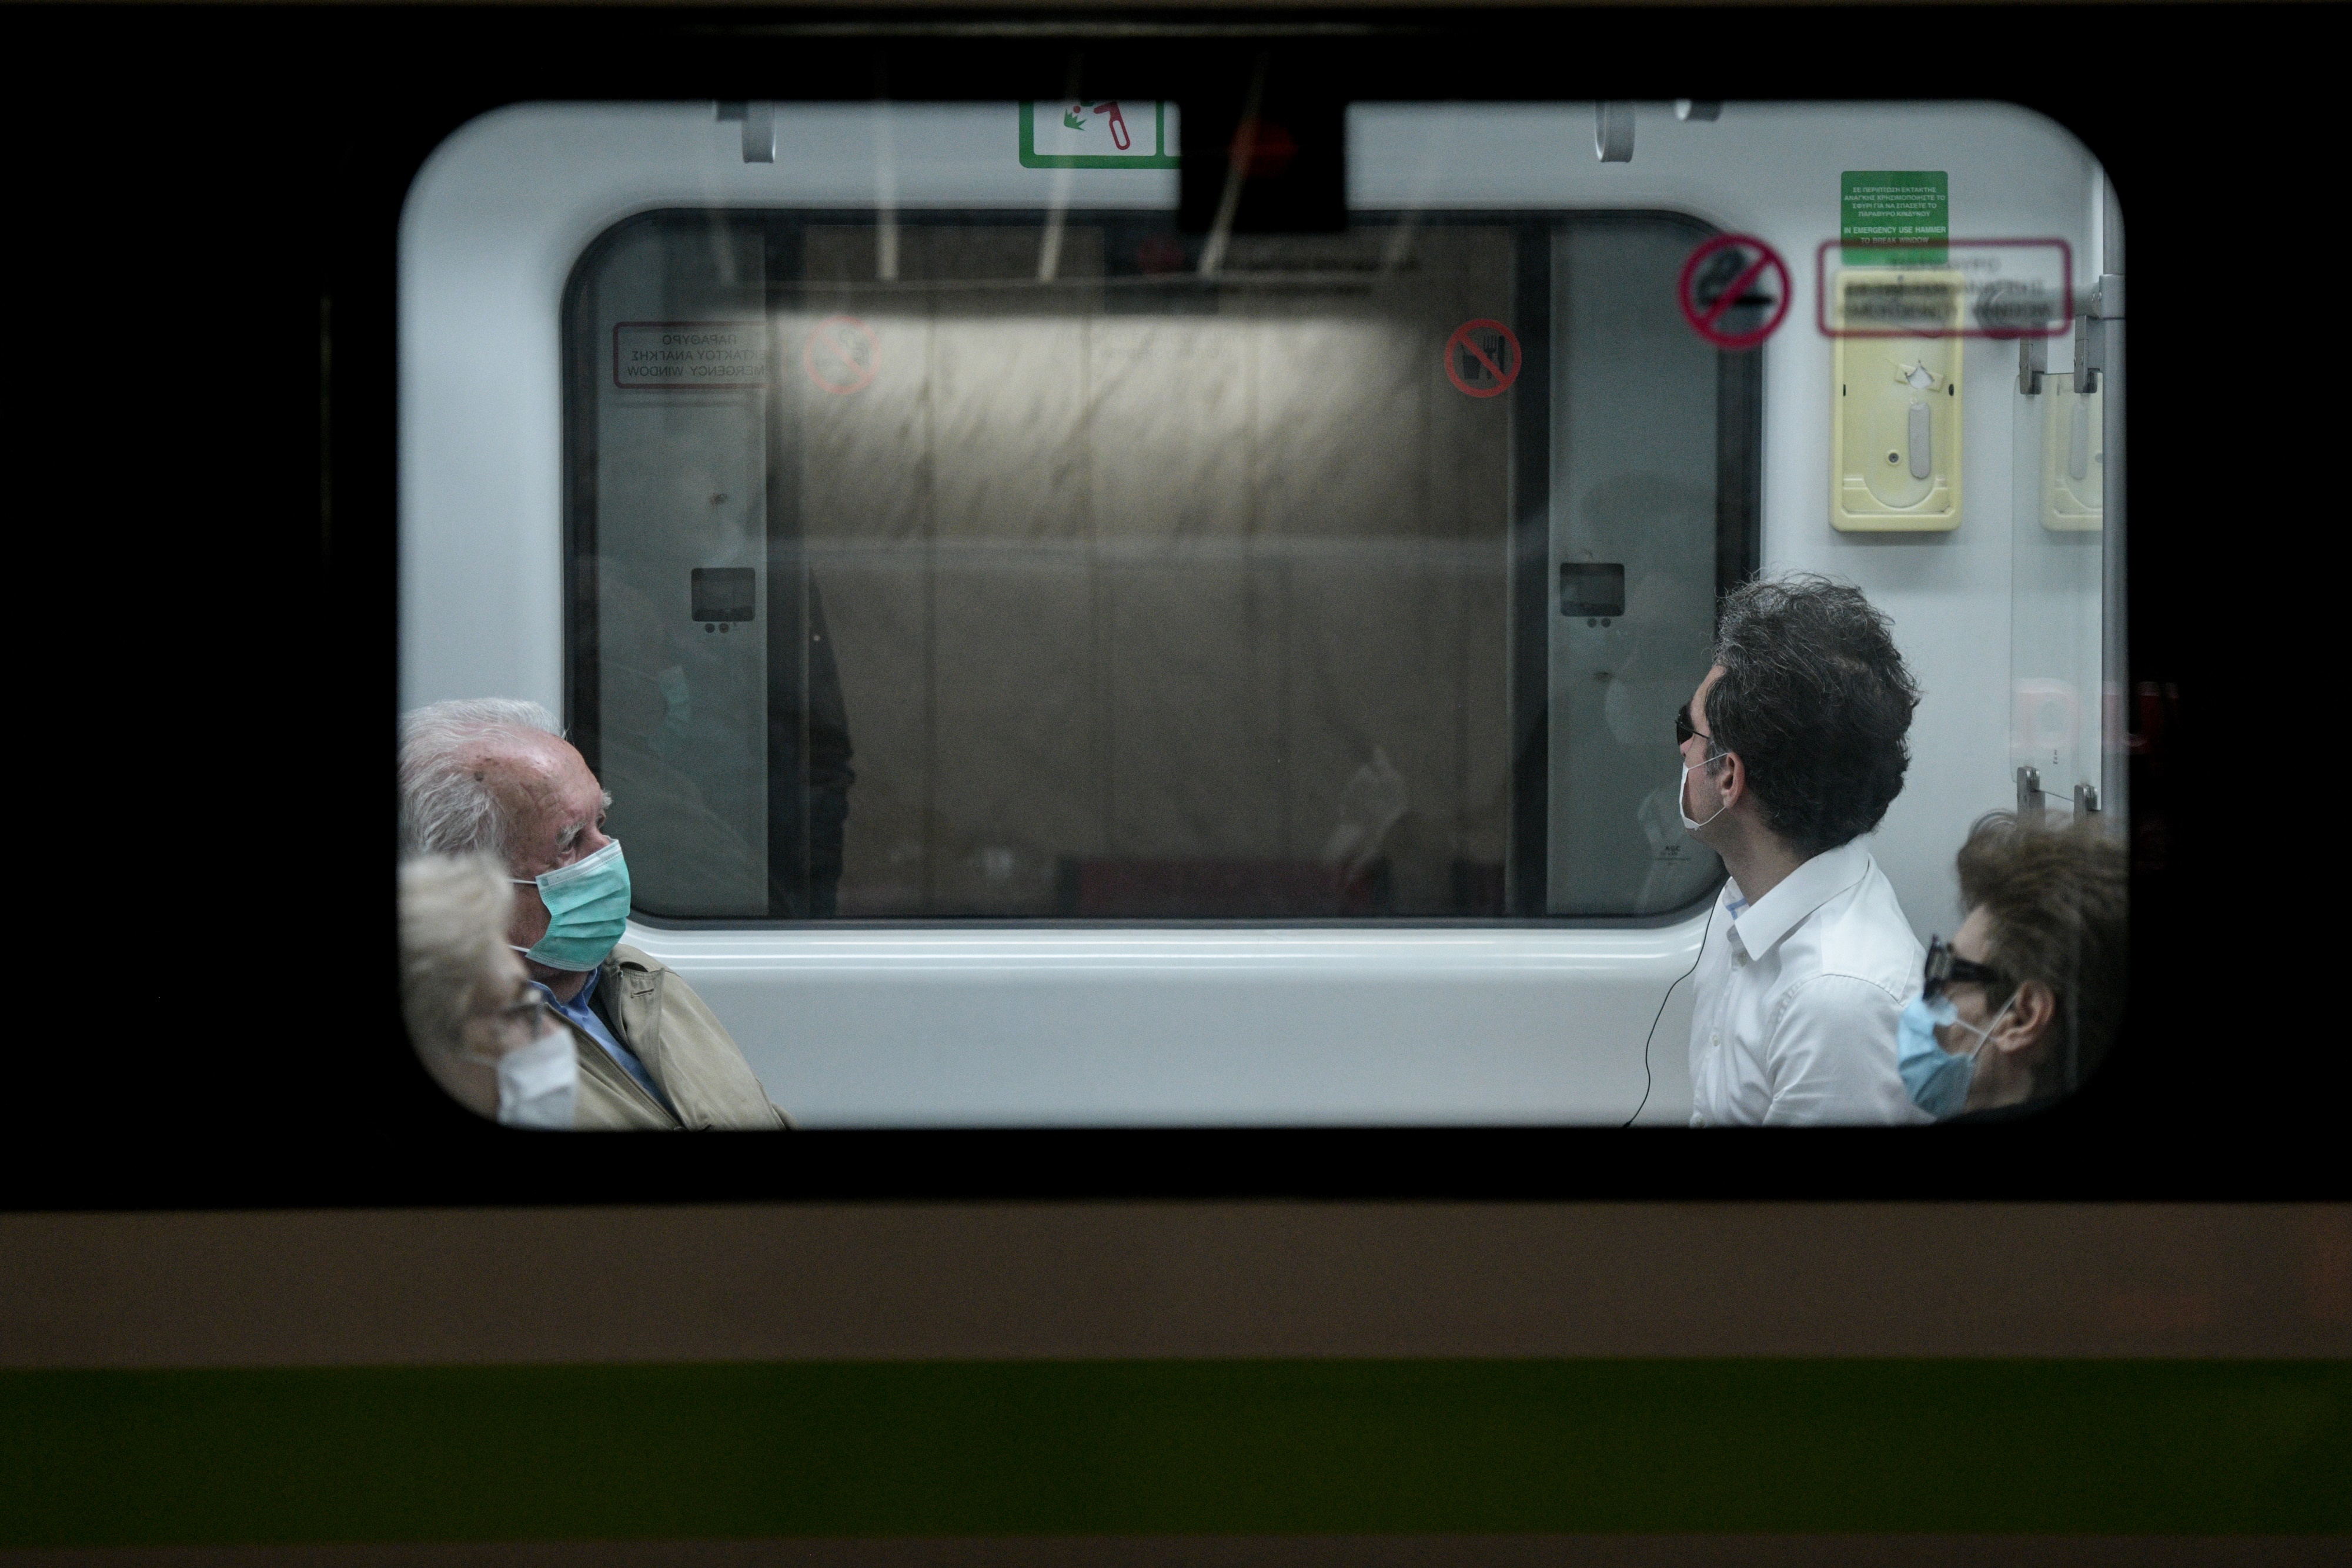 Ξυλοδαρμός στο μετρό: Σοκαριστική περιγραφή από τον σταθμάρχη